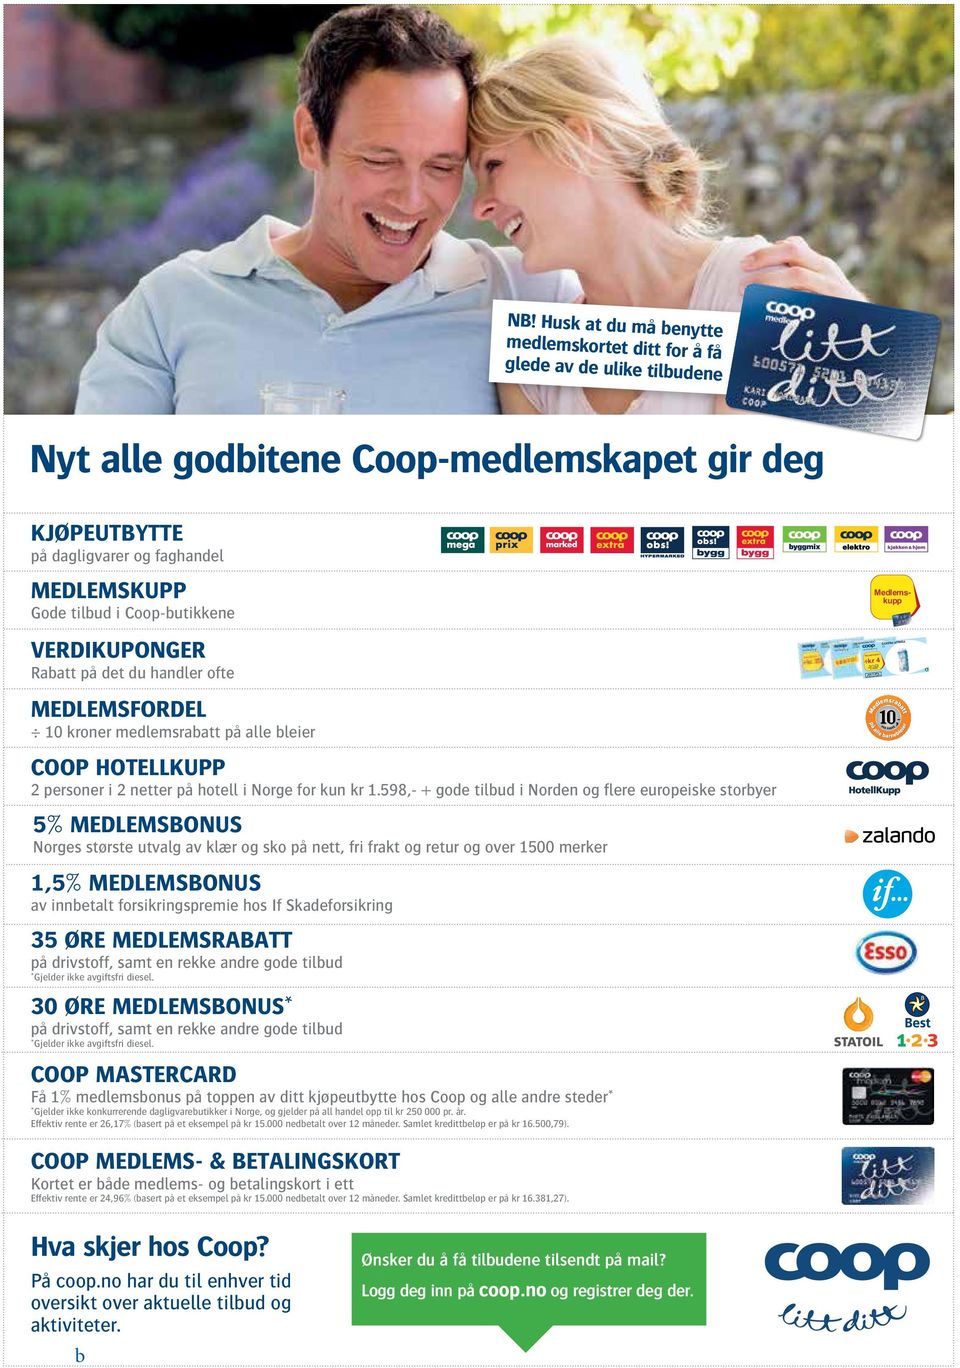 Coop-butikkene verdikuponger Rabatt på det du handler ofte medlemsfordel 10 kroner medlemsrabatt på alle bleier Coop Hotellkupp 2 personer i 2 netter på hotell i Norge for kun kr 1.